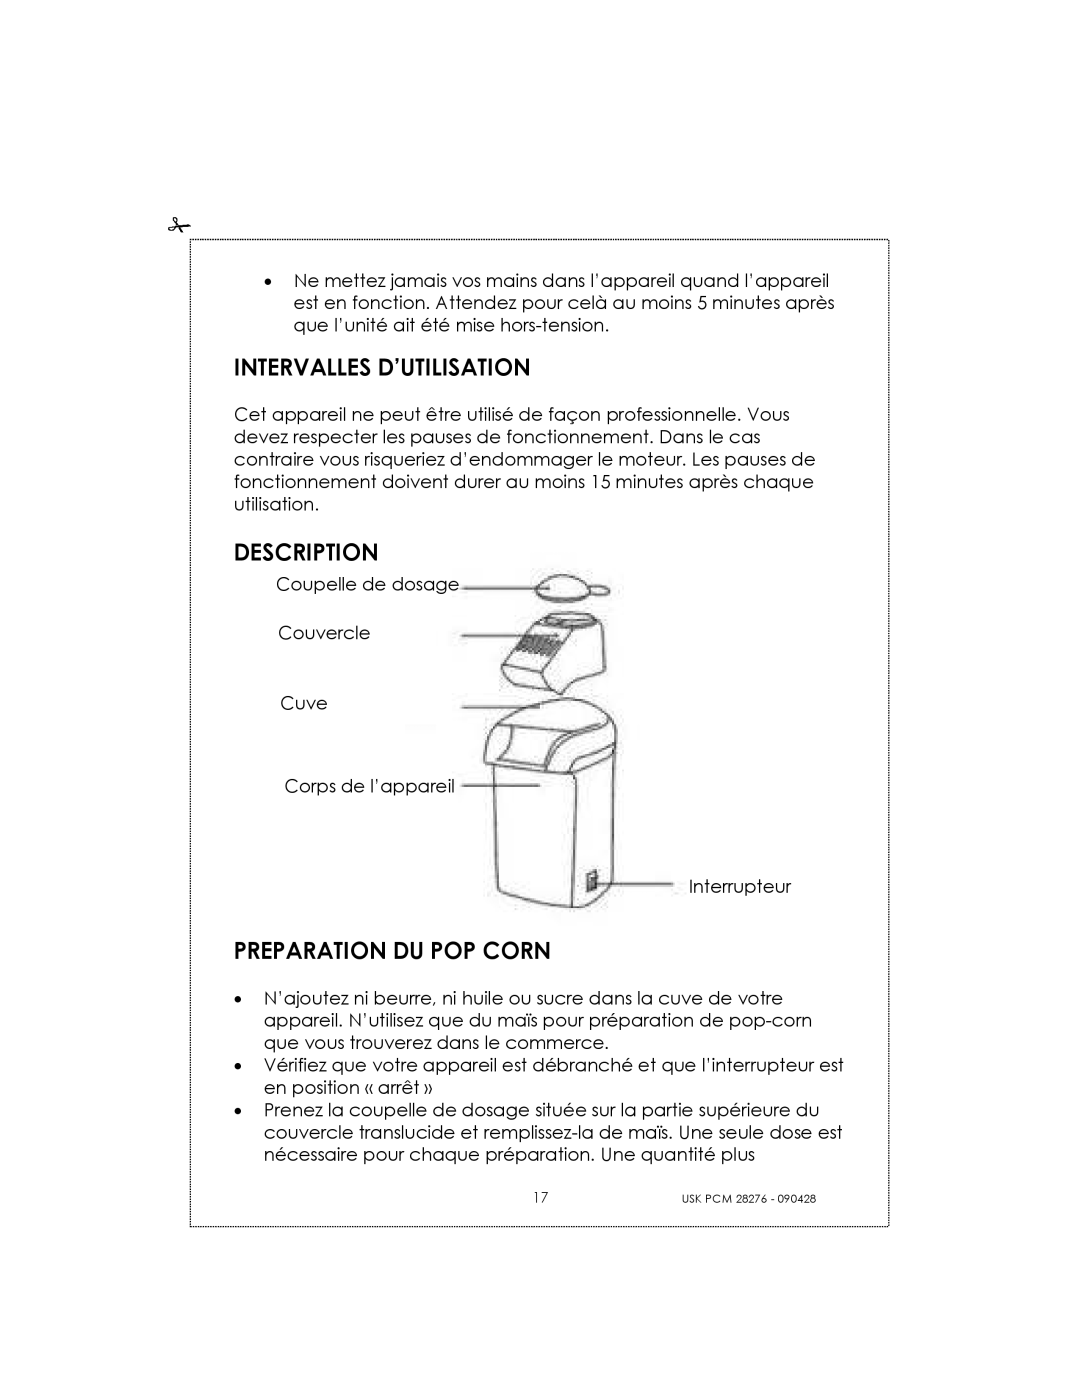 Kalorik USK PCM 28276 manual Intervalles D’Utilisation, Description, Preparation Du Pop Corn 